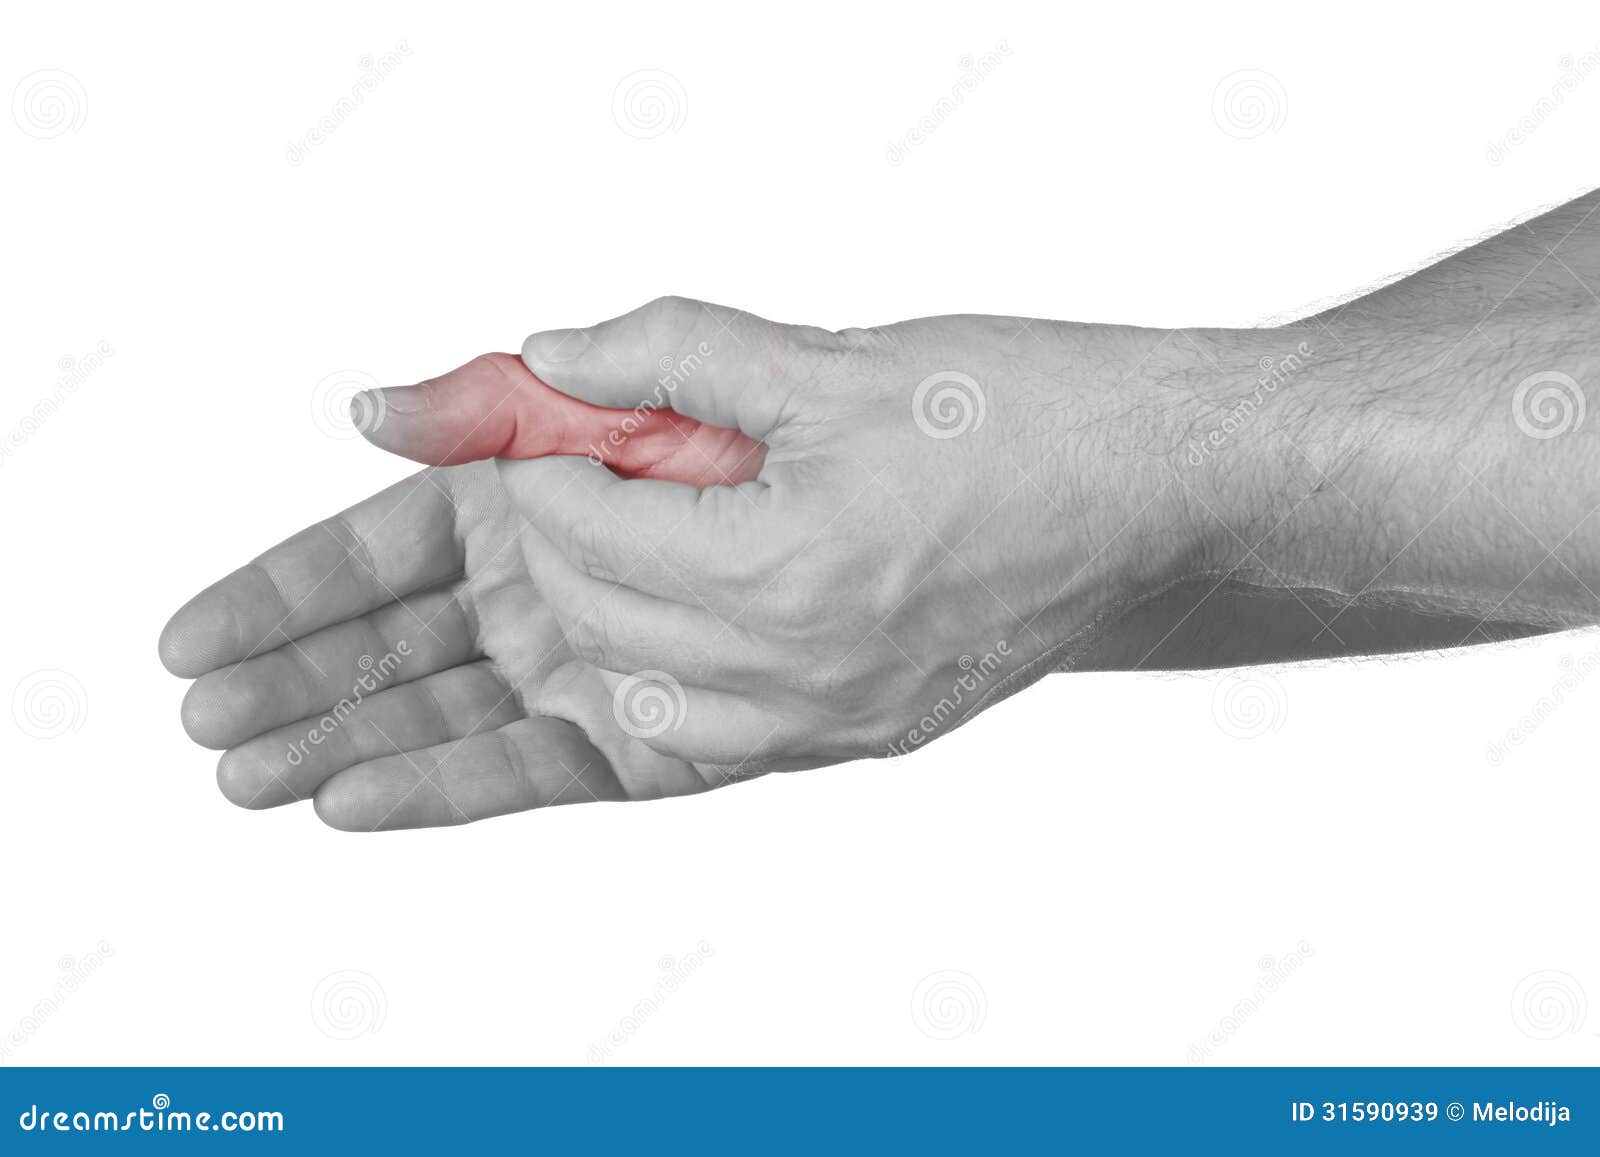 Сильная боль в суставах рук. Сустав большого пальца руки. Боль в суставе большого пальца руки. Болит сустав большого пальца на руке. Болит сустав Болшево пальца на руке.